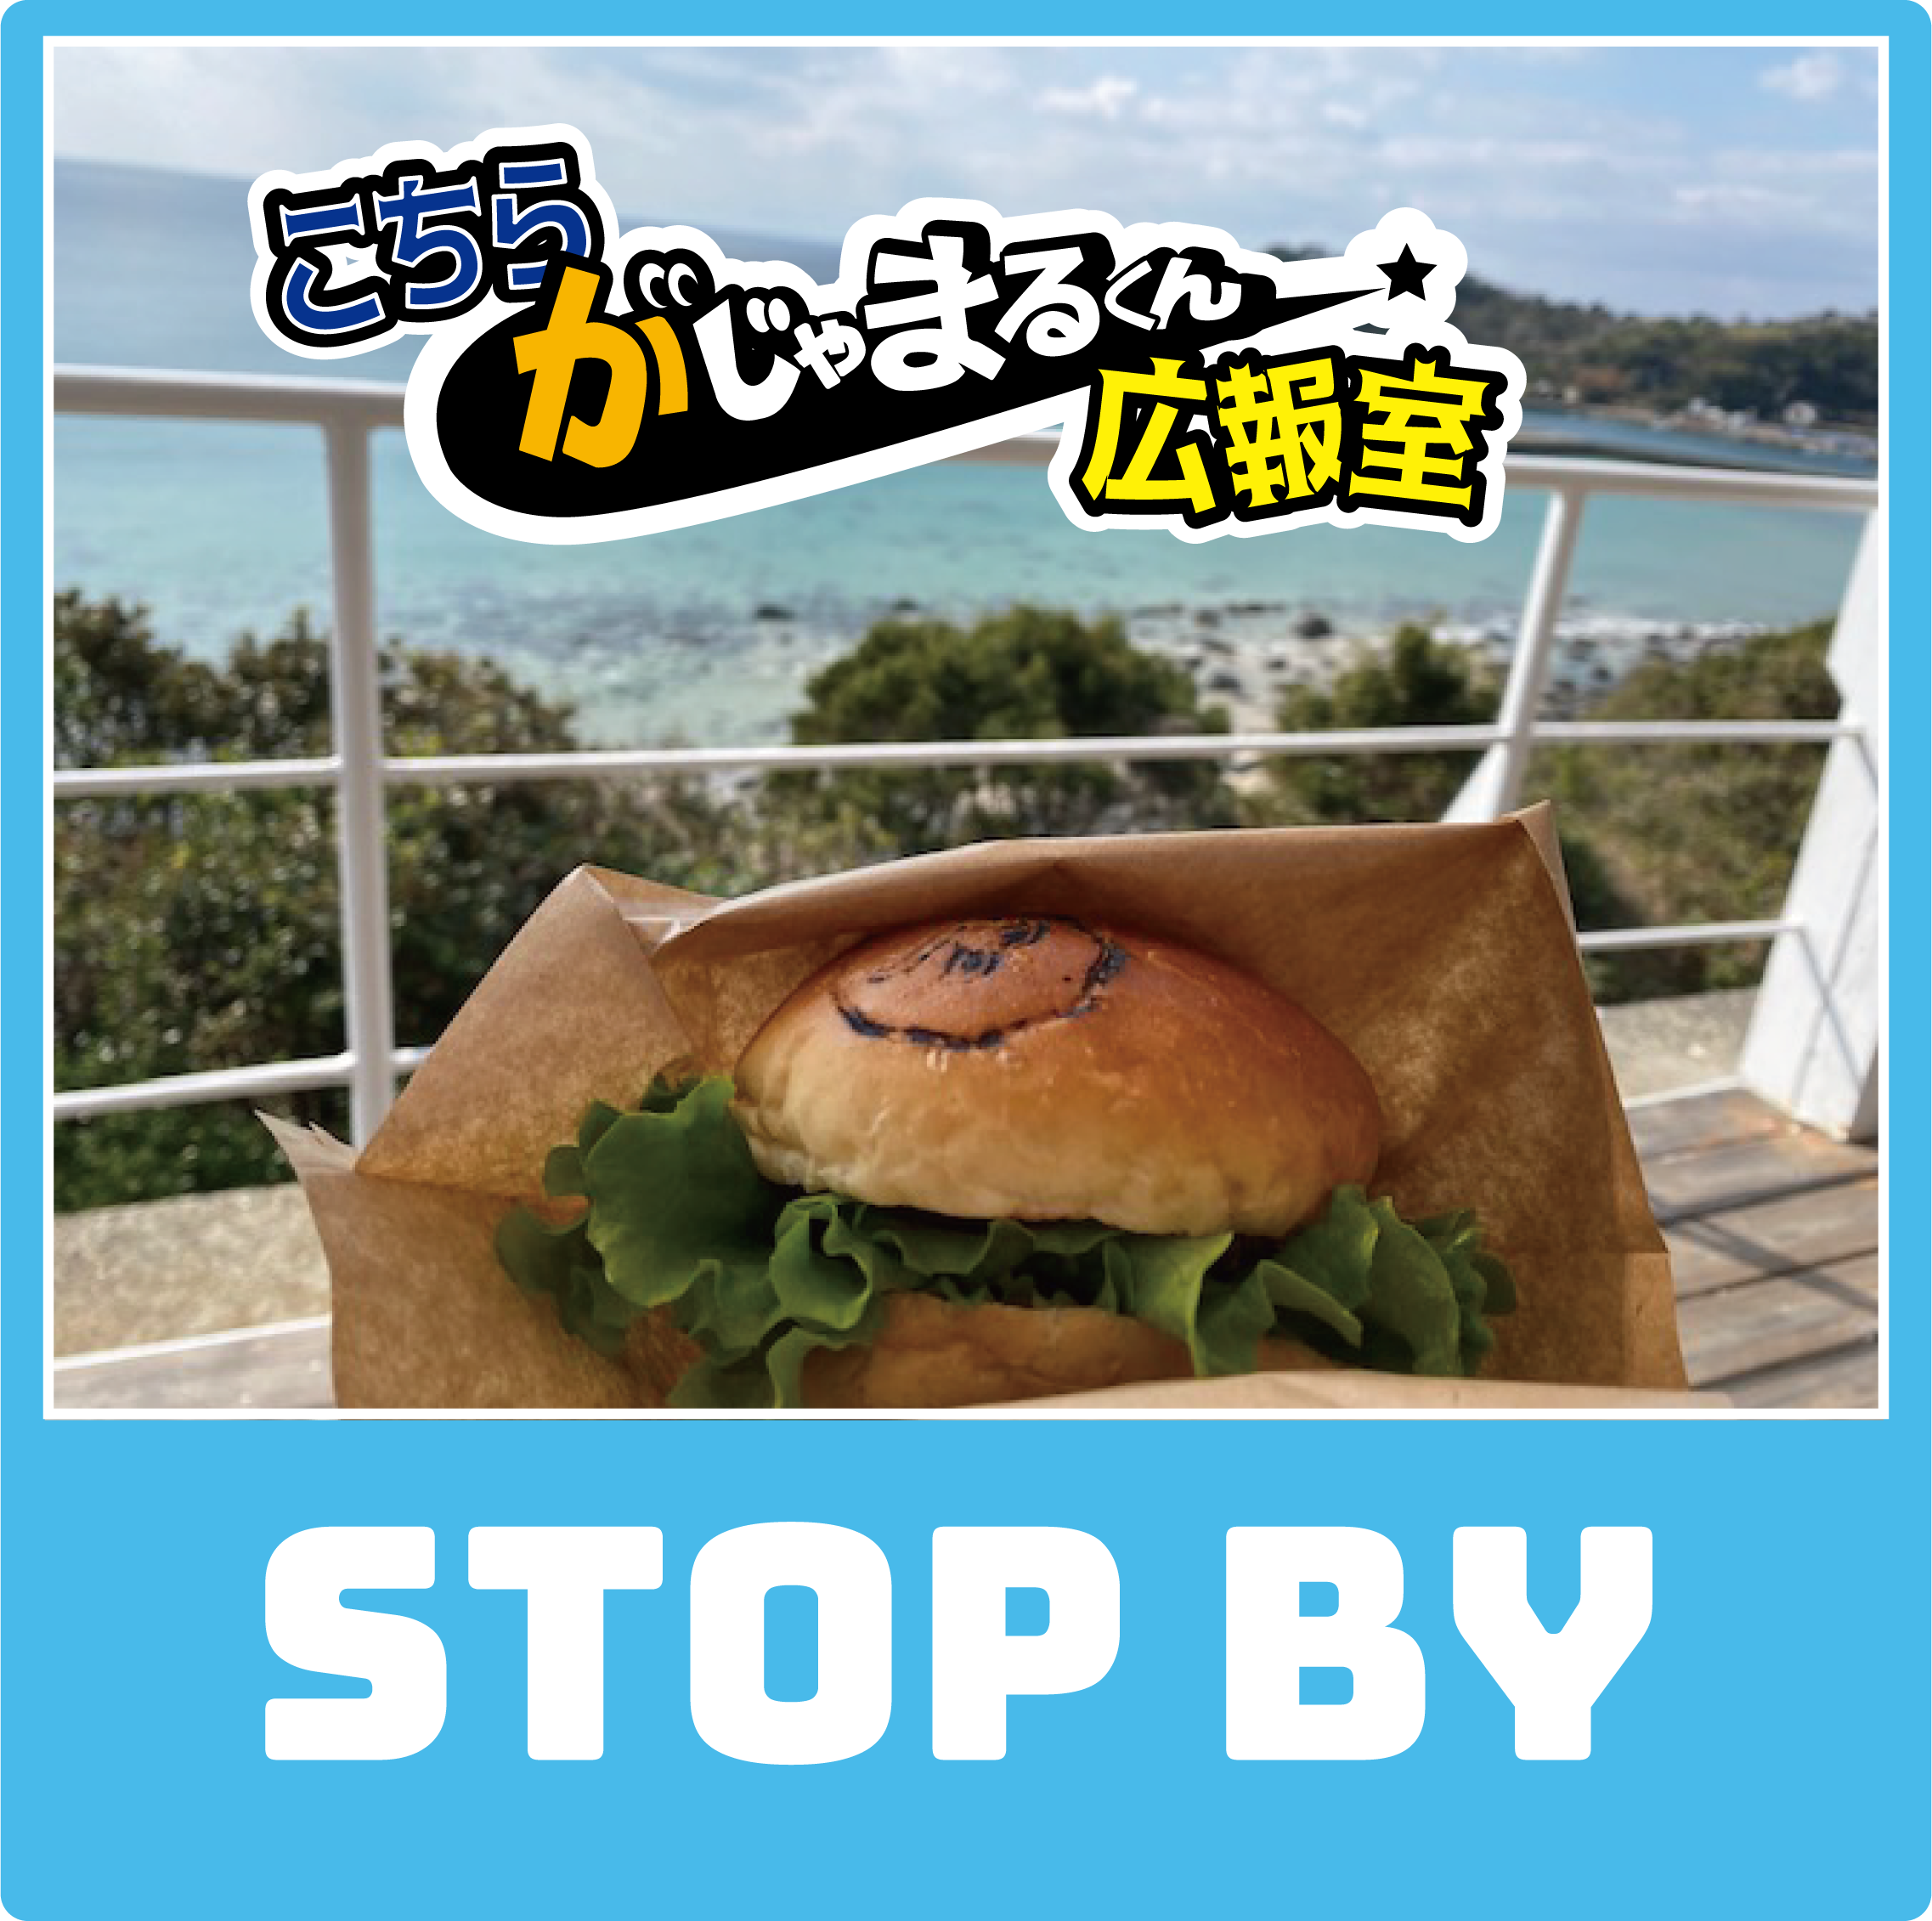 長島町のデートコースNo1「Stop by」さんに行ってみた